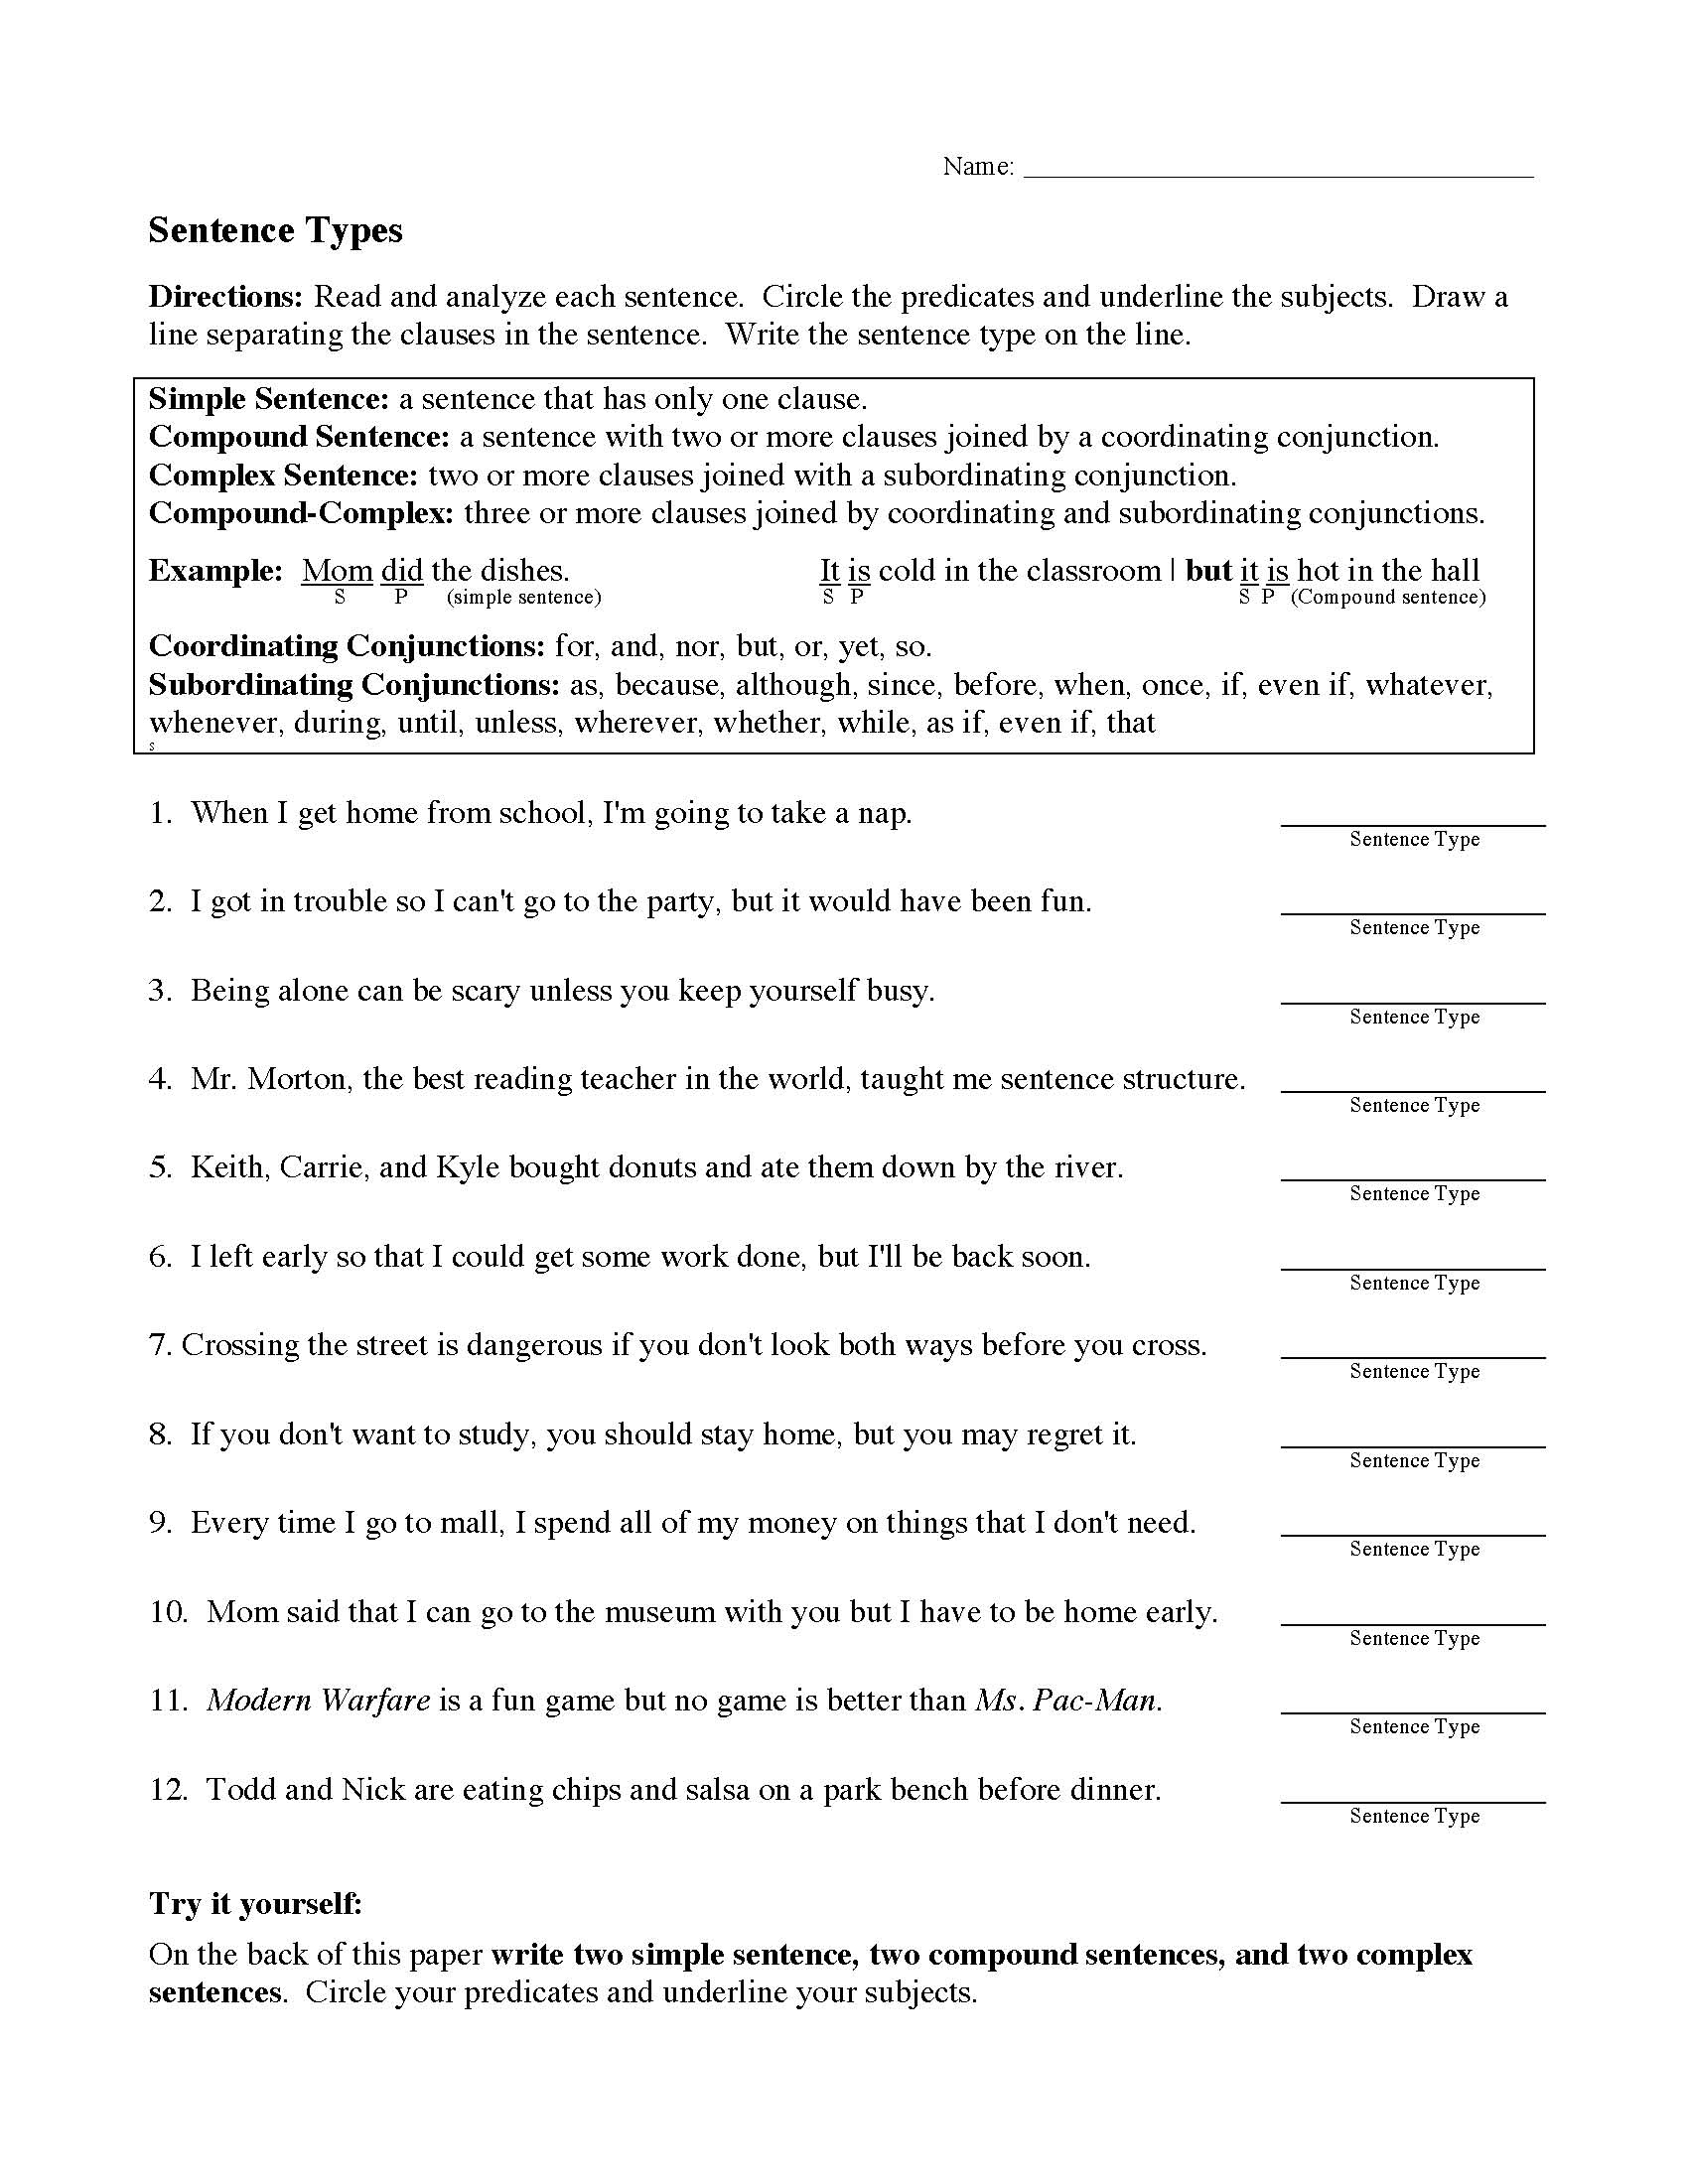 Identifying Sentence Types Worksheet 8th Grade